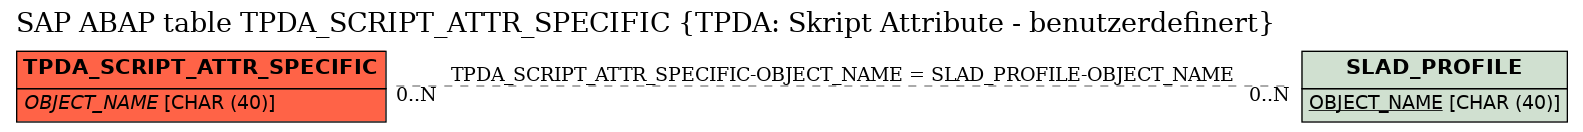 E-R Diagram for table TPDA_SCRIPT_ATTR_SPECIFIC (TPDA: Skript Attribute - benutzerdefinert)